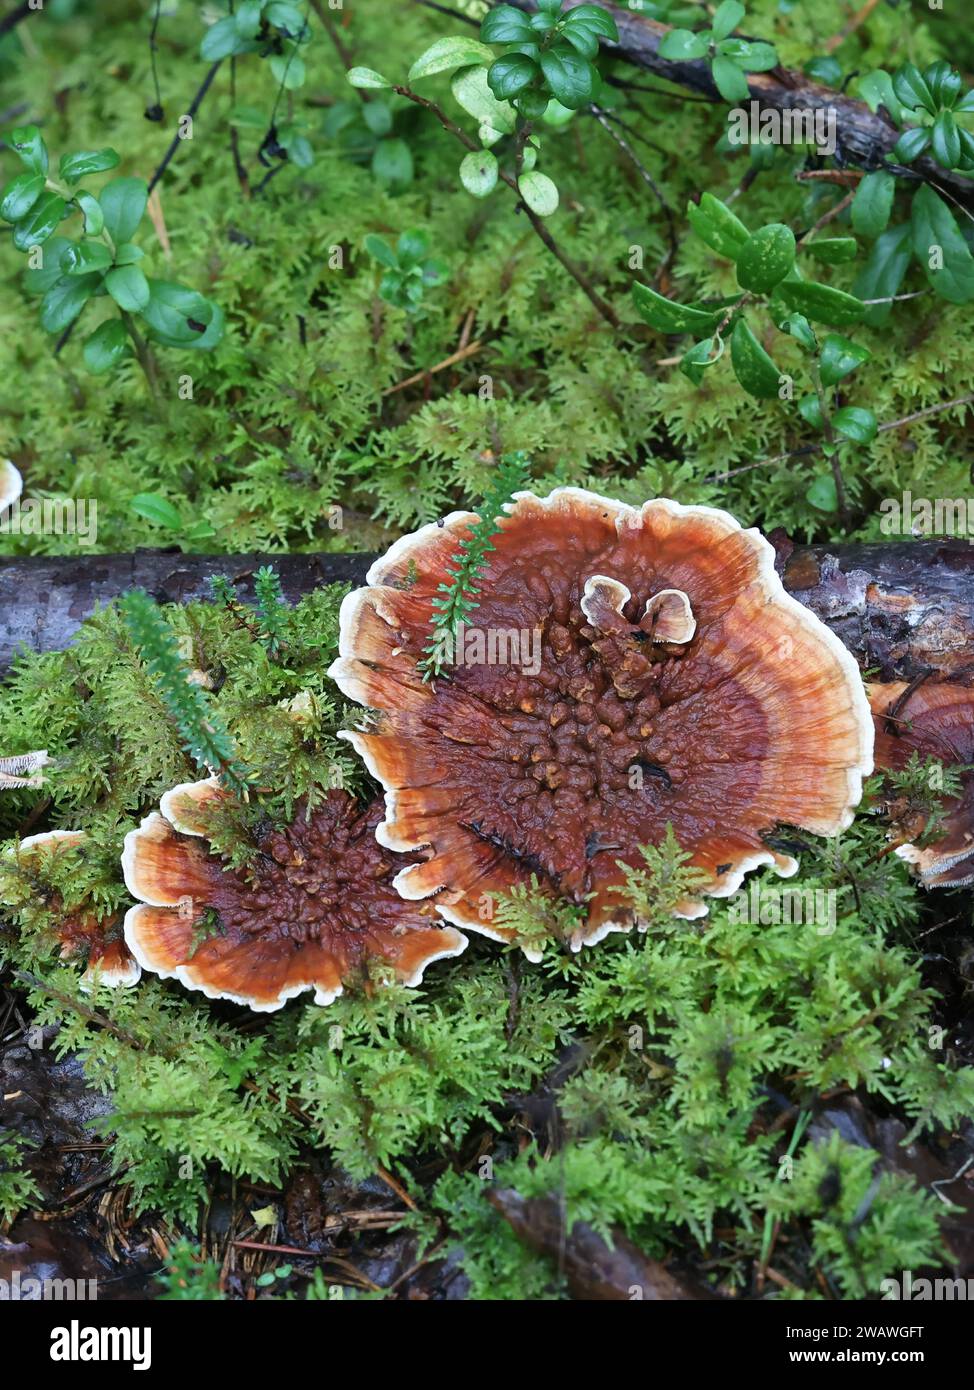 Hydnellum aurantiacum, known as the orange spine or orange Hydnellum, wild tooth fungus from Finland Stock Photo